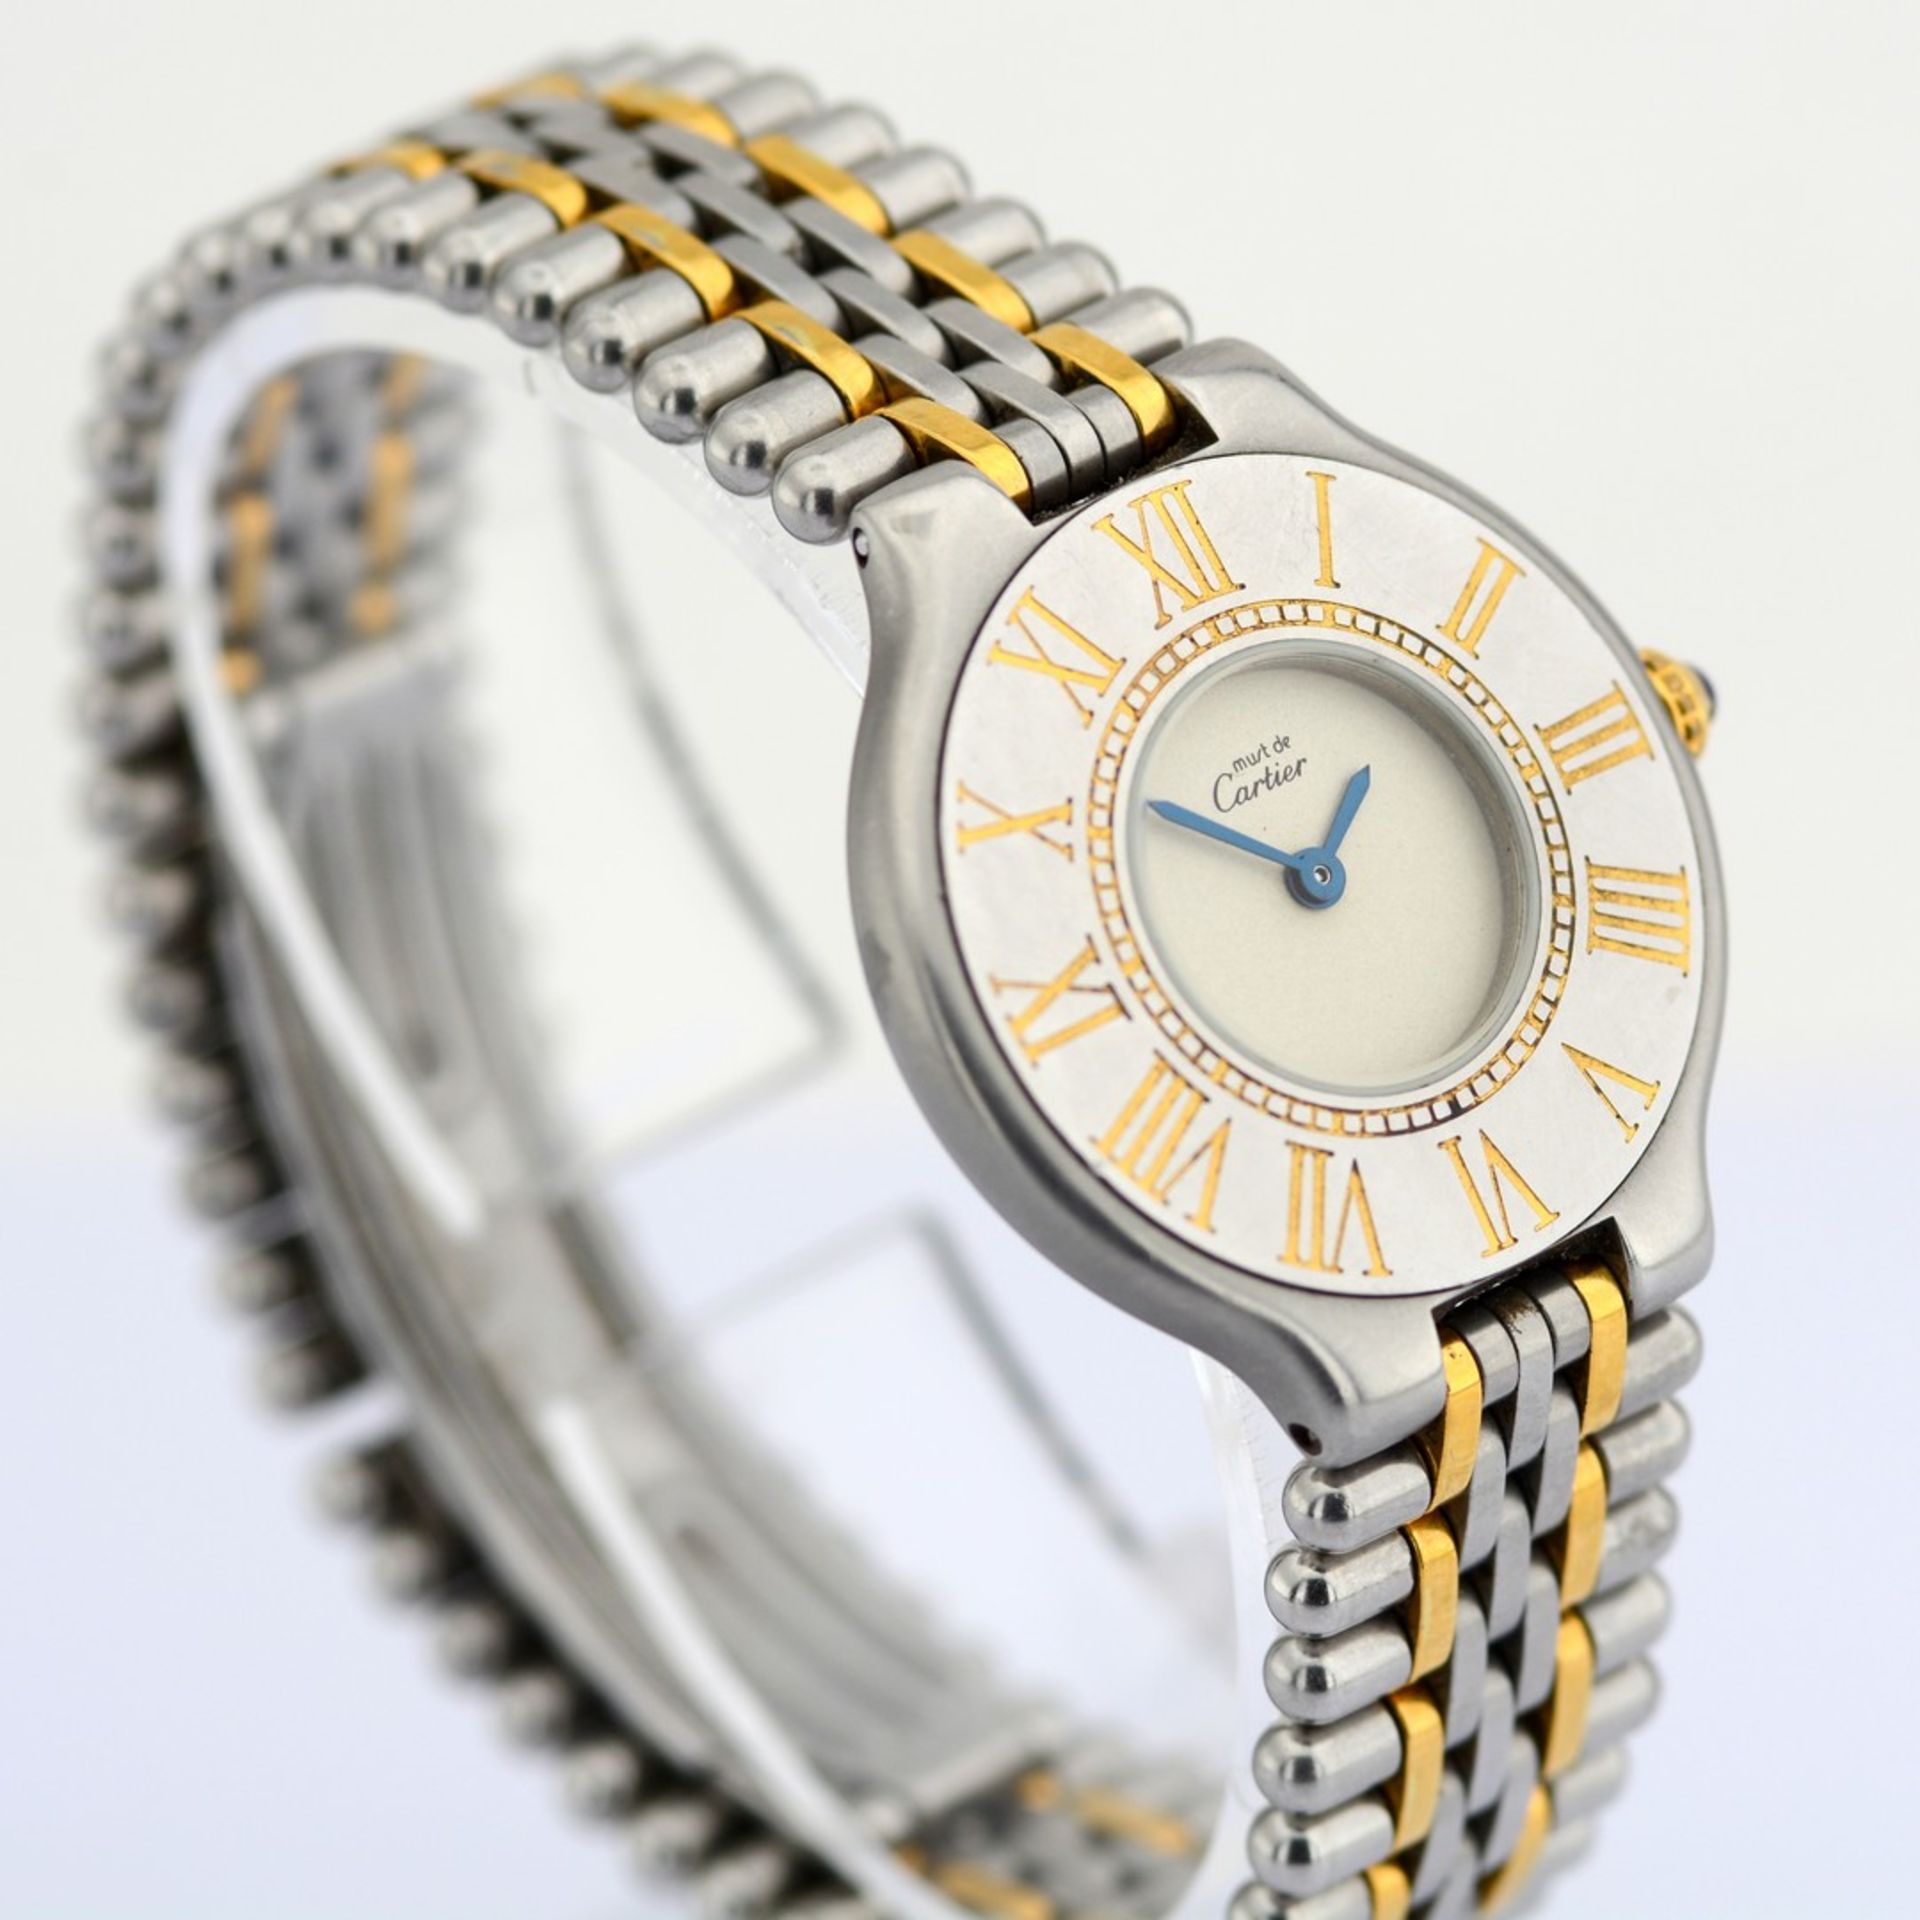 Cartier / Must de 21 - Lady's Gold/Steel Wrist Watch - Image 5 of 8